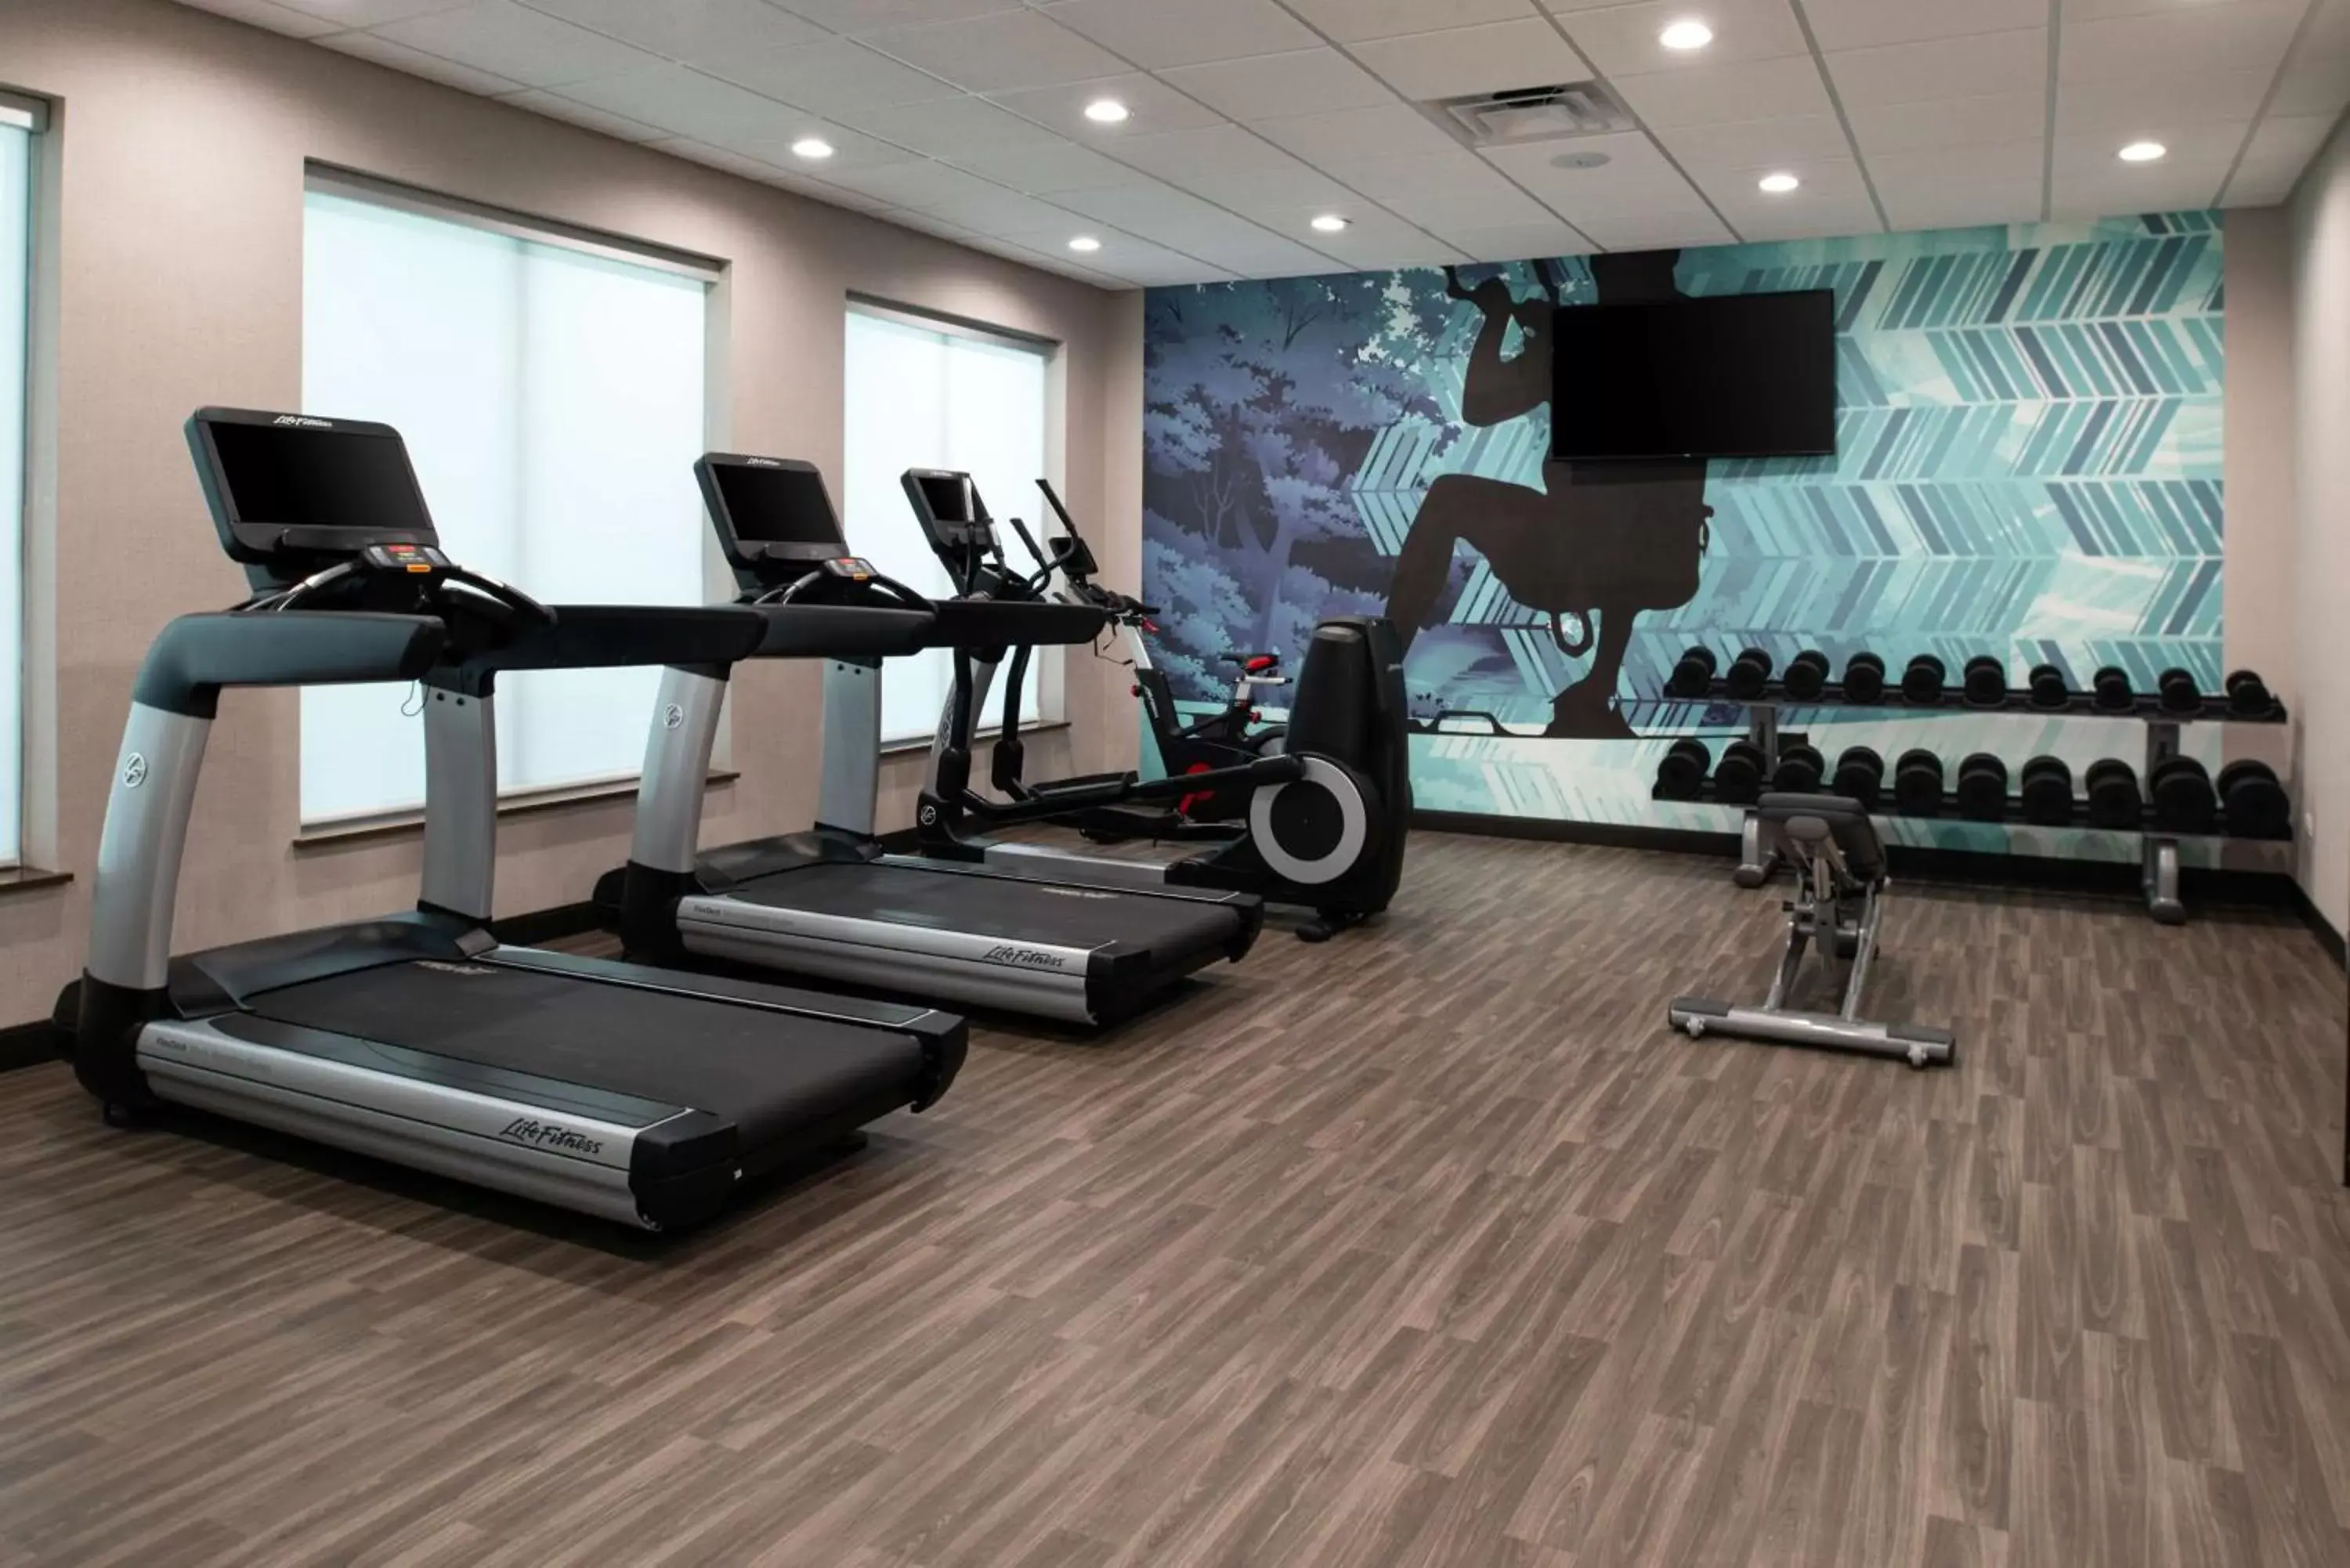 Fitness centre/facilities, Fitness Center/Facilities in Hyatt Place Dallas/Rockwall